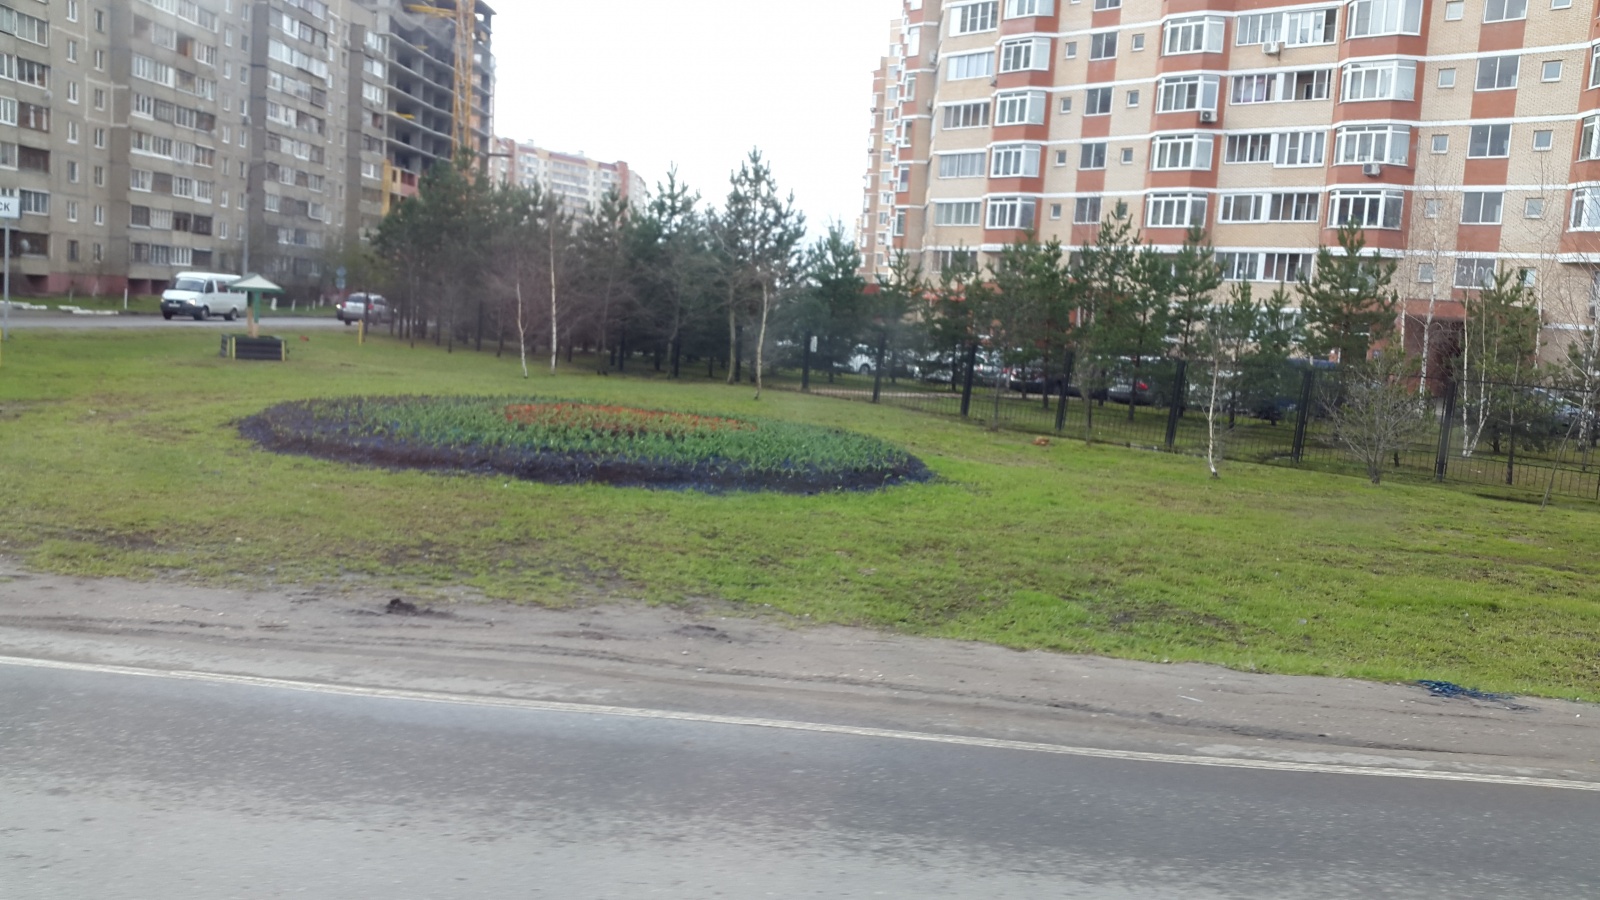  В поселении Рязановское начались работы по посадке тюльпанов